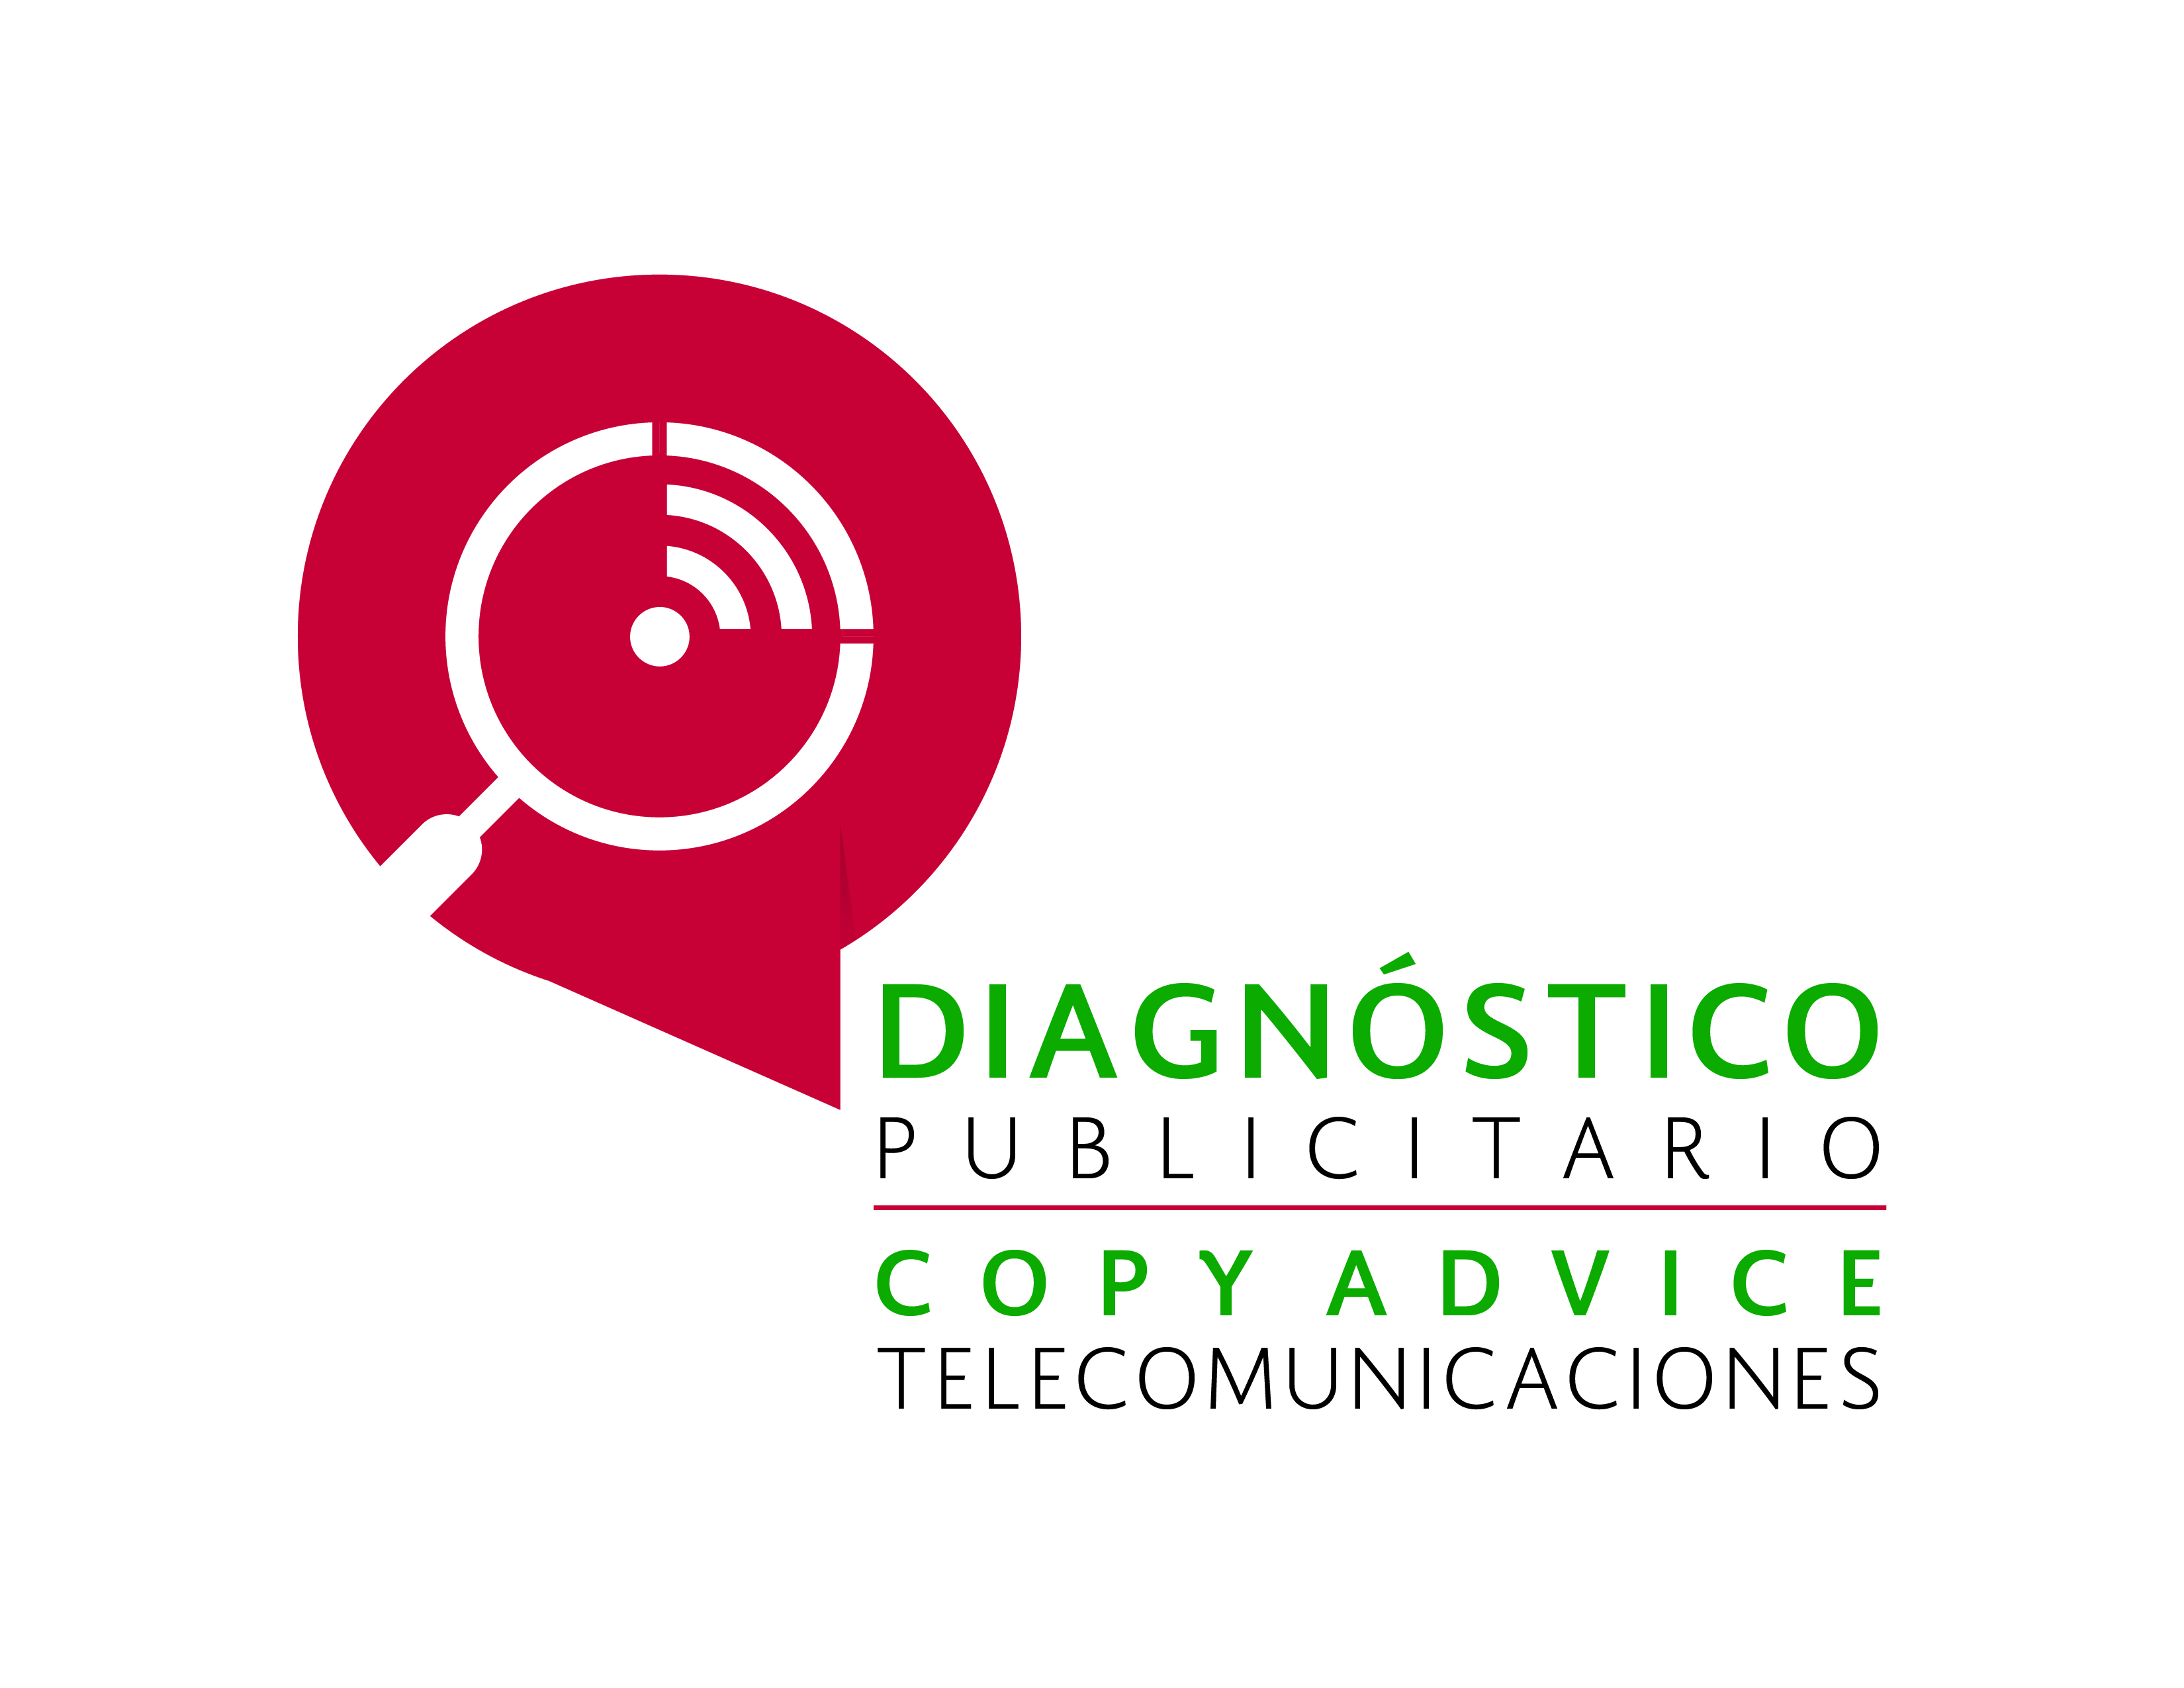 Diagnóstico Publicitario de Telecomunicaciones.
(Copy Advice)
